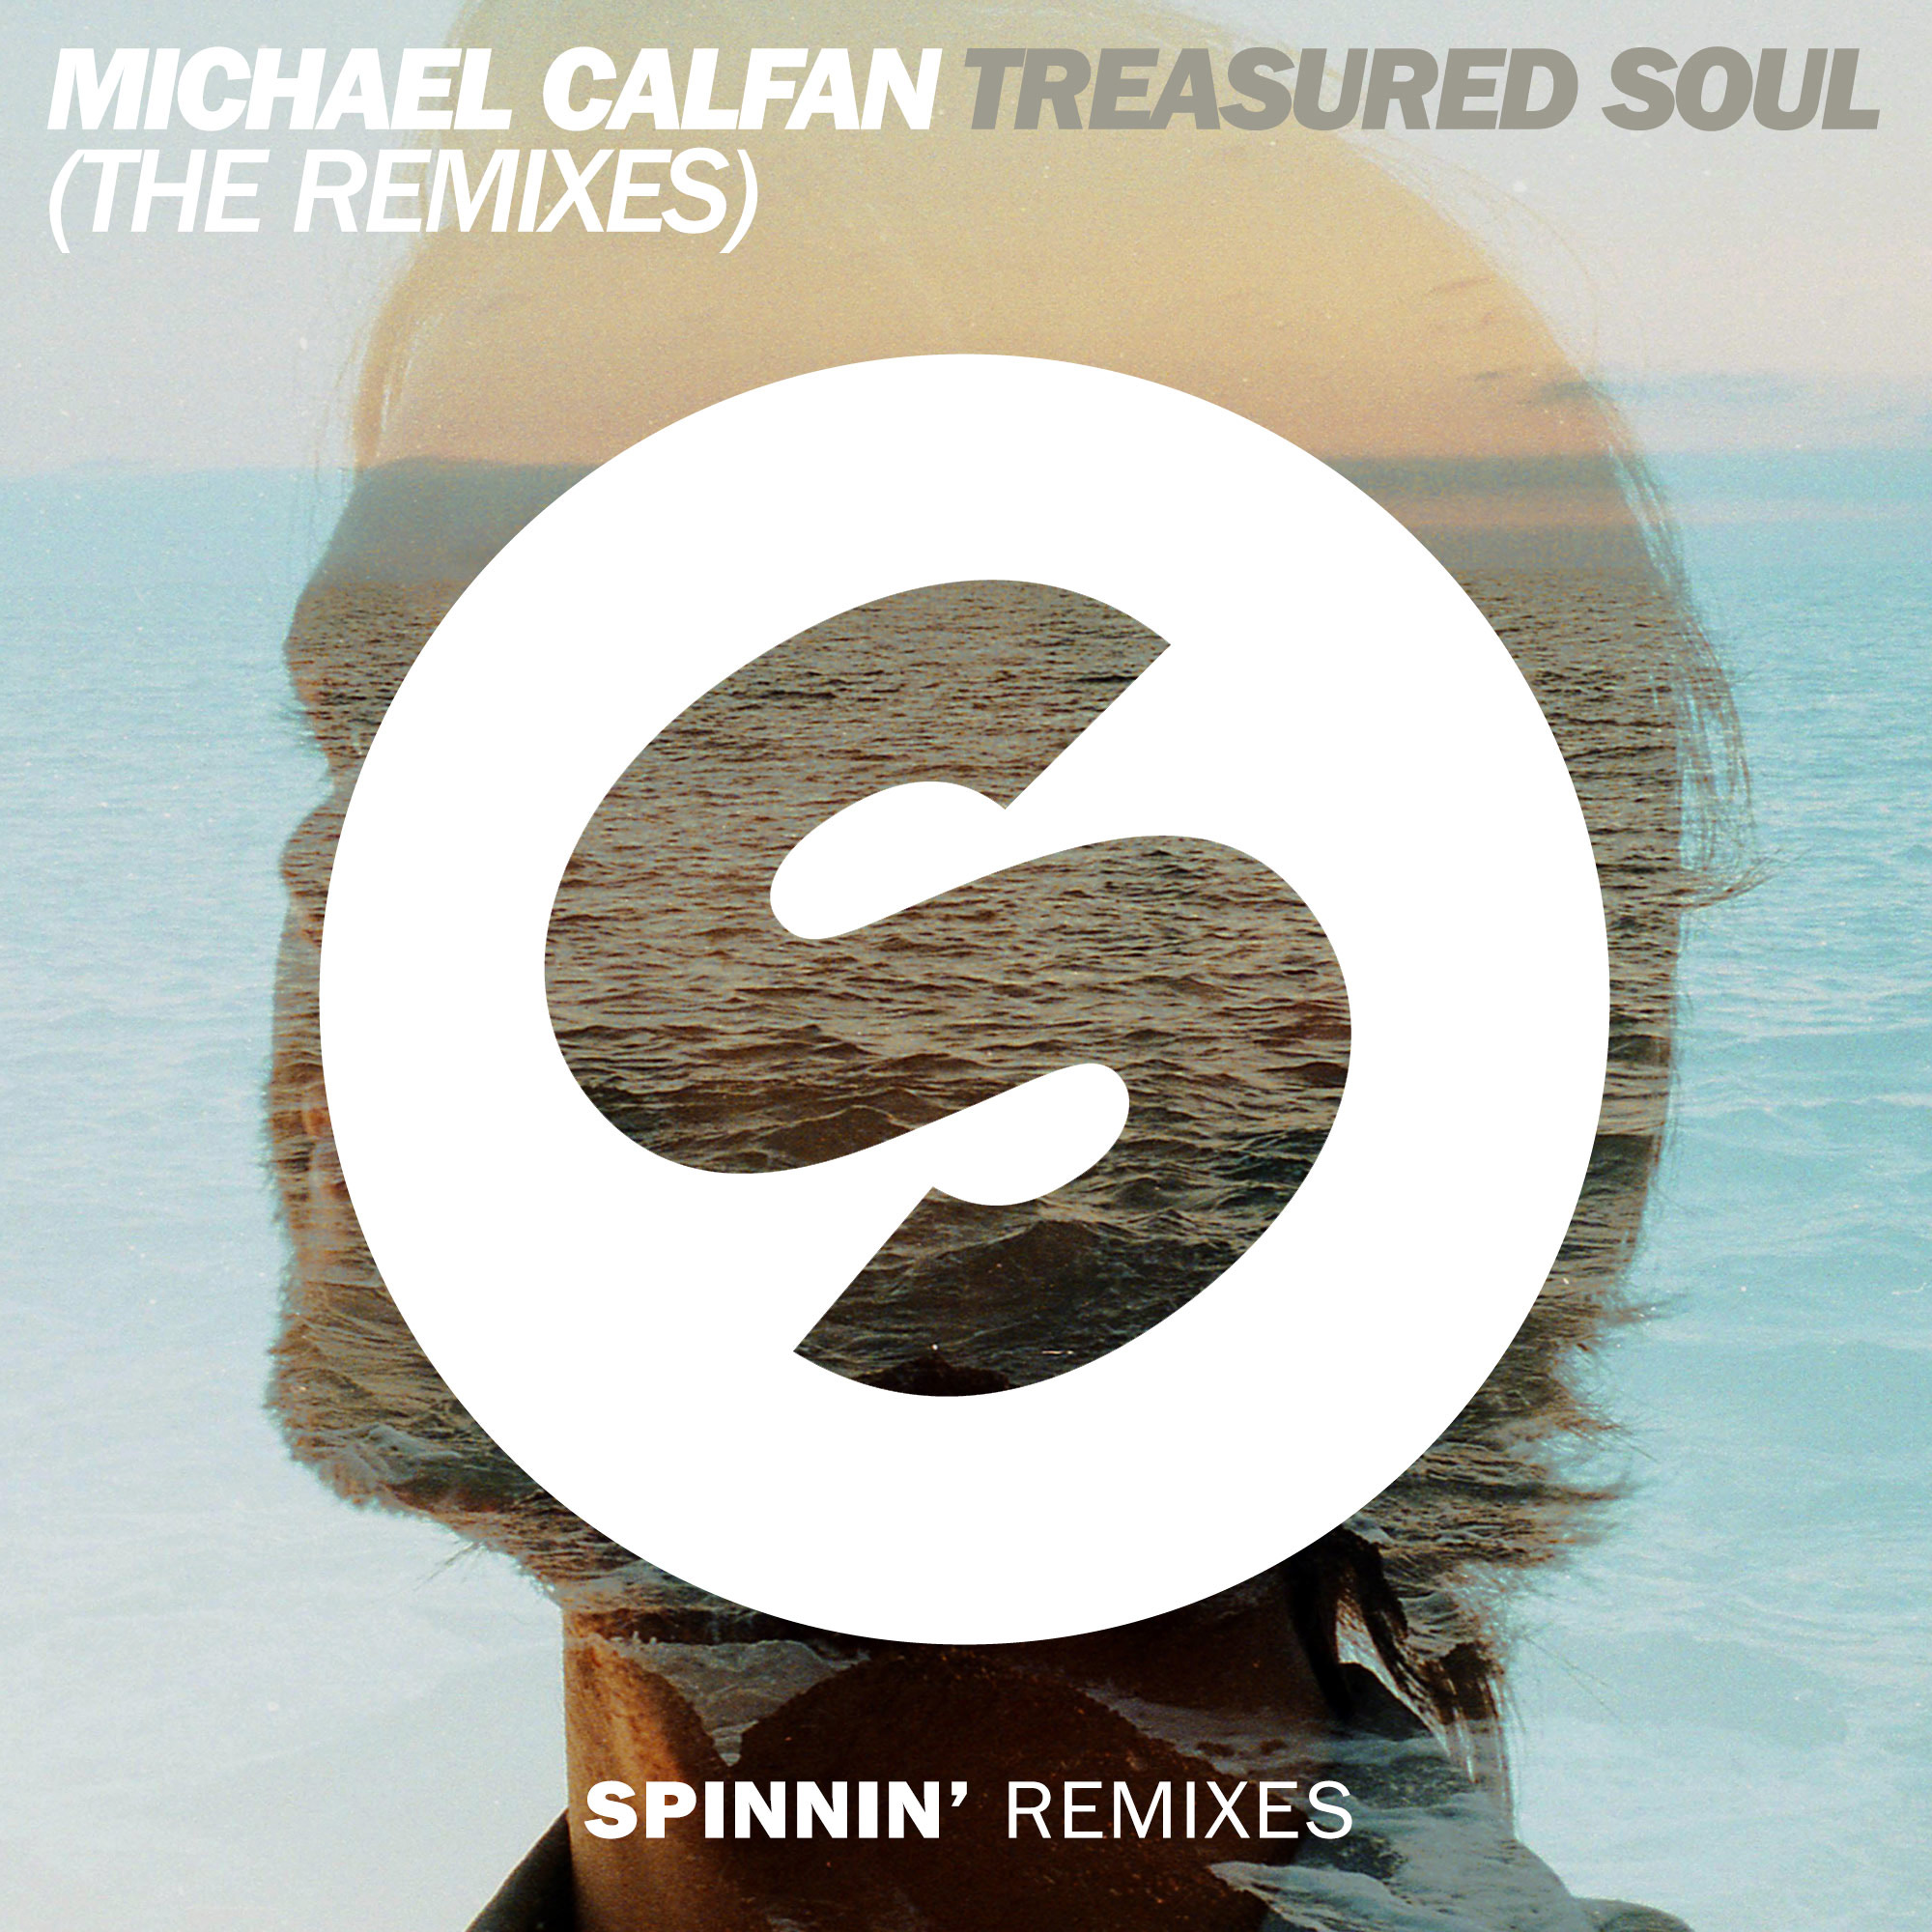 treasured soul michael calfan